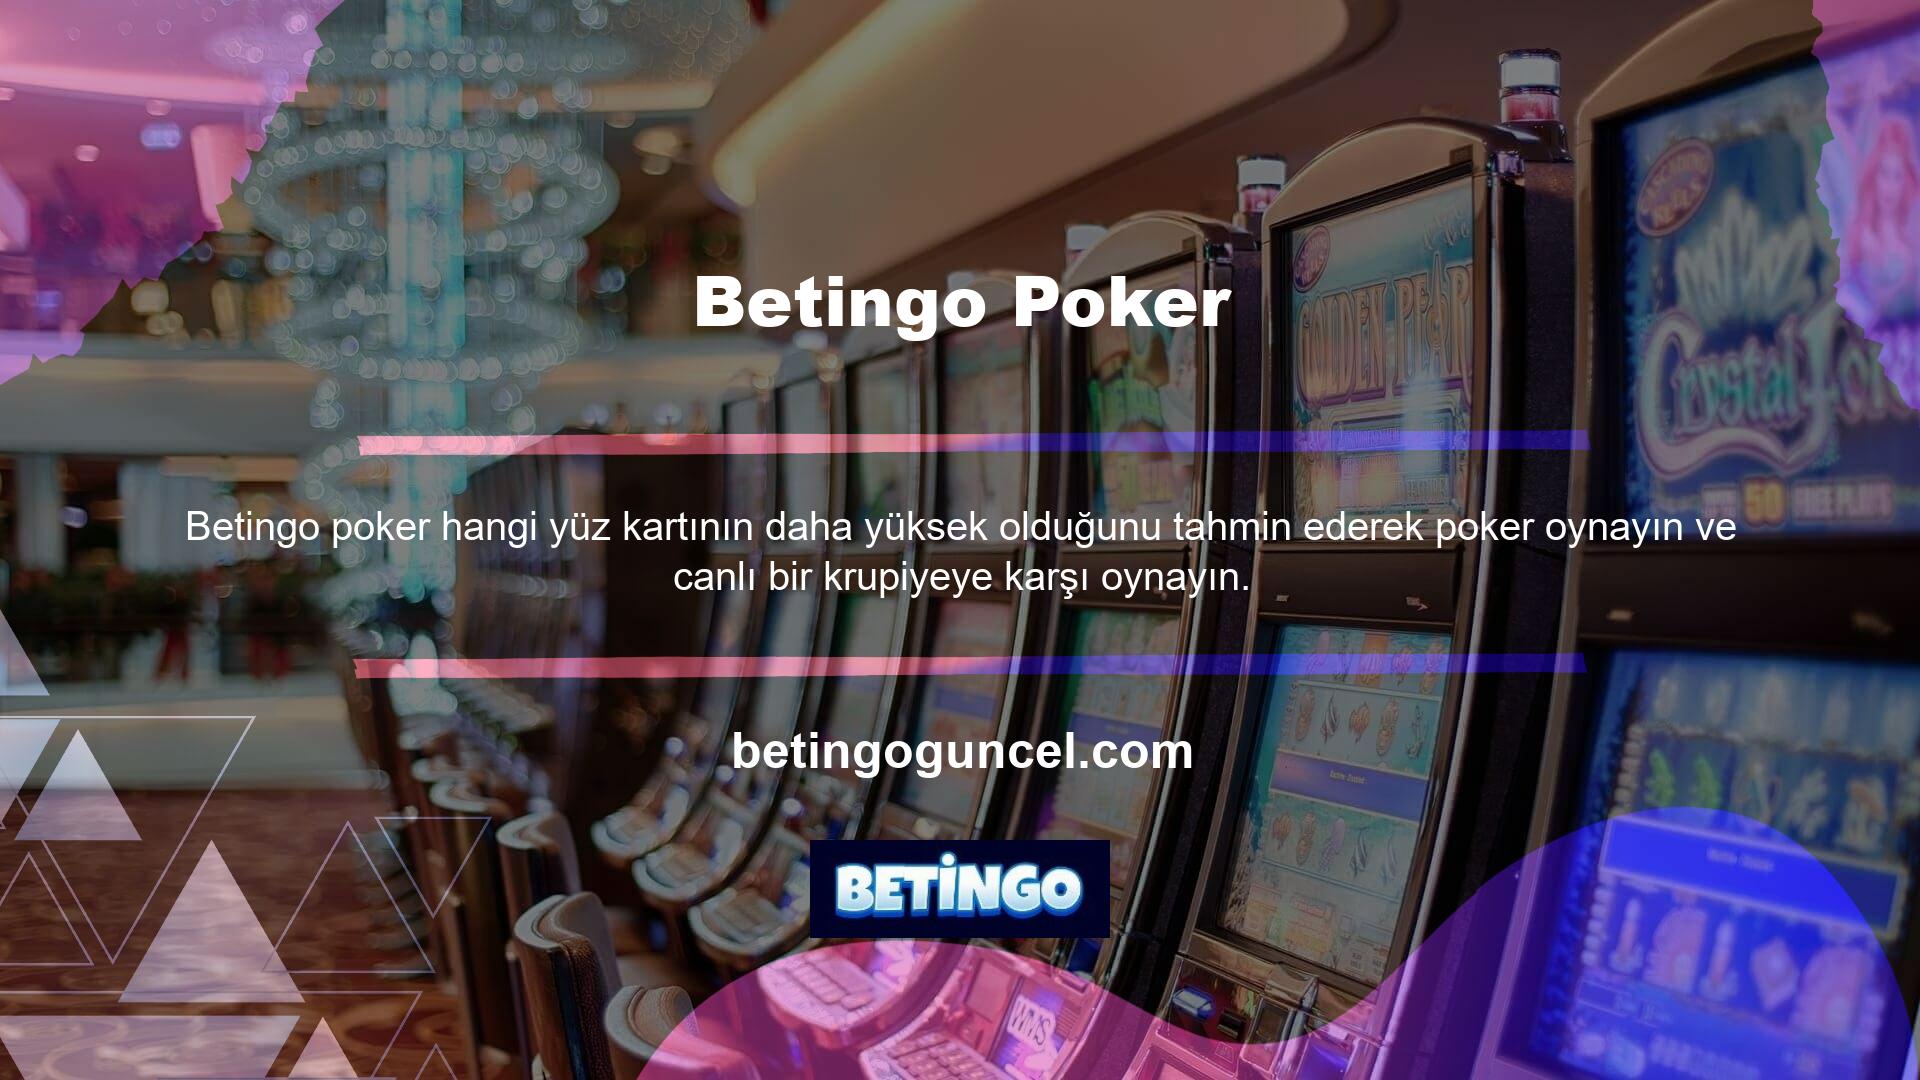 Ayrıca oyunun Türkçe versiyonu canlı casinoda da oynanabilmektedir